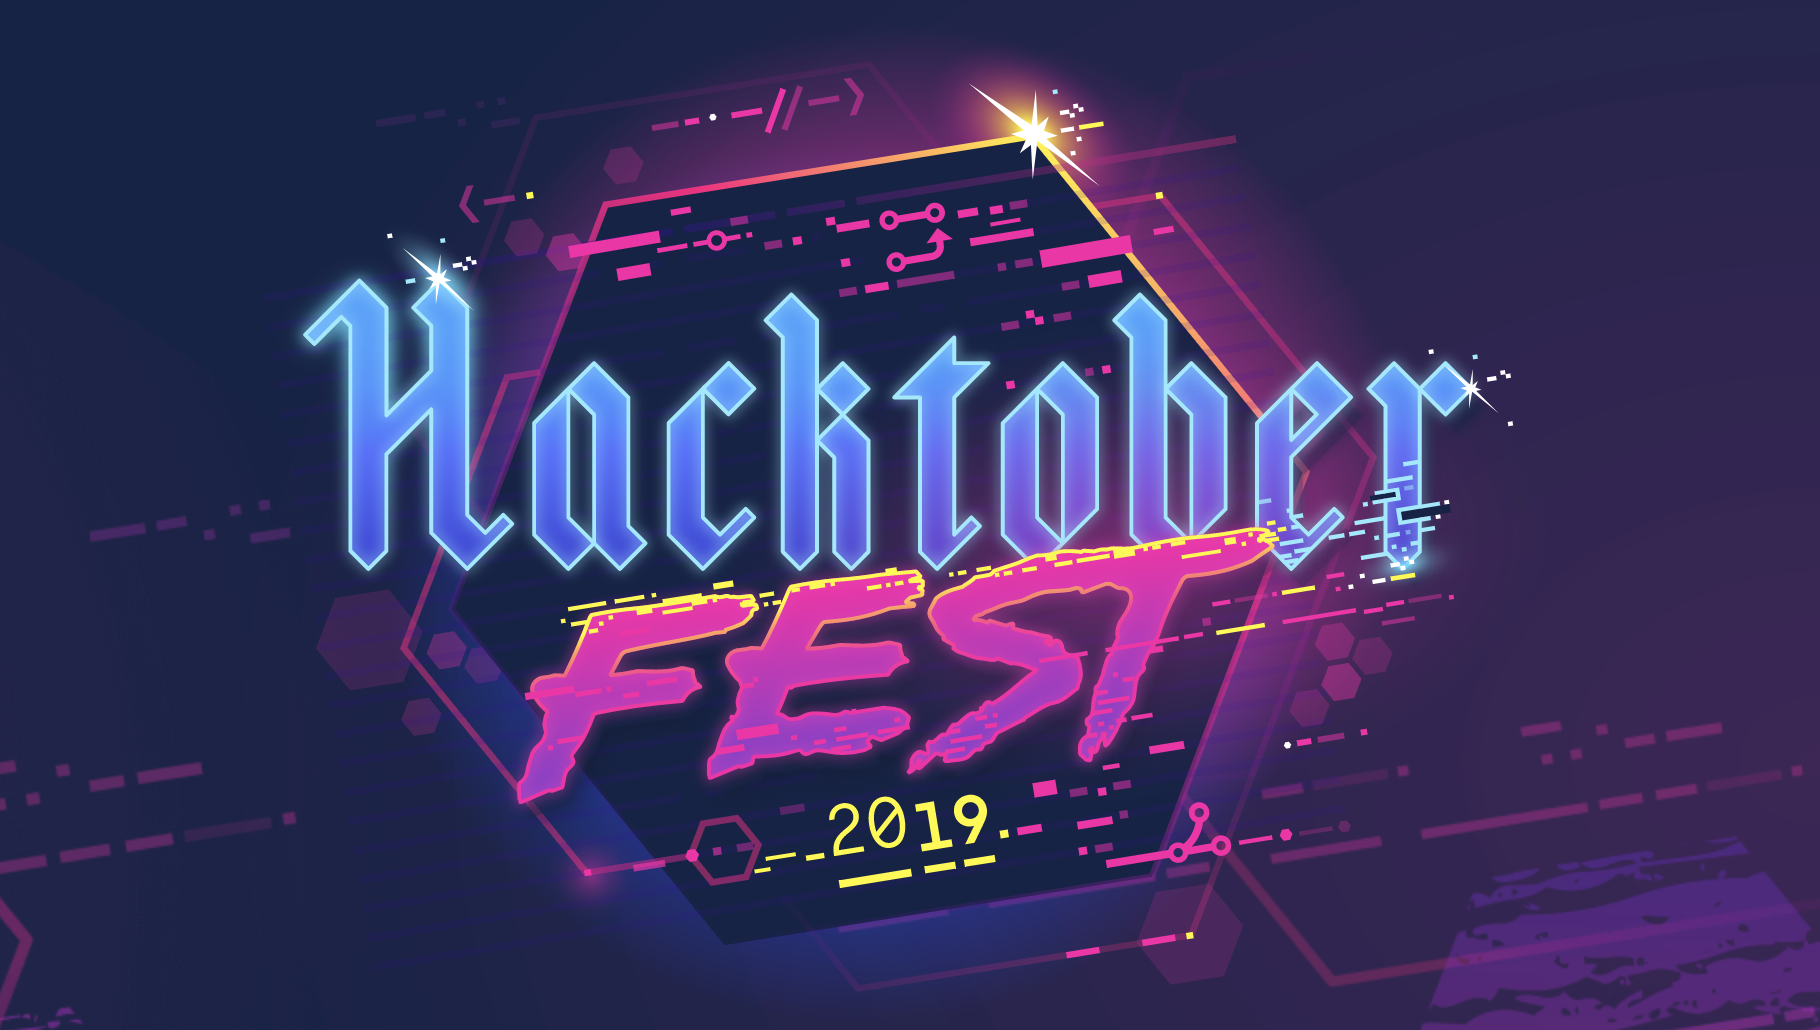 Hacktoberfest 2019 Registration is Now Open